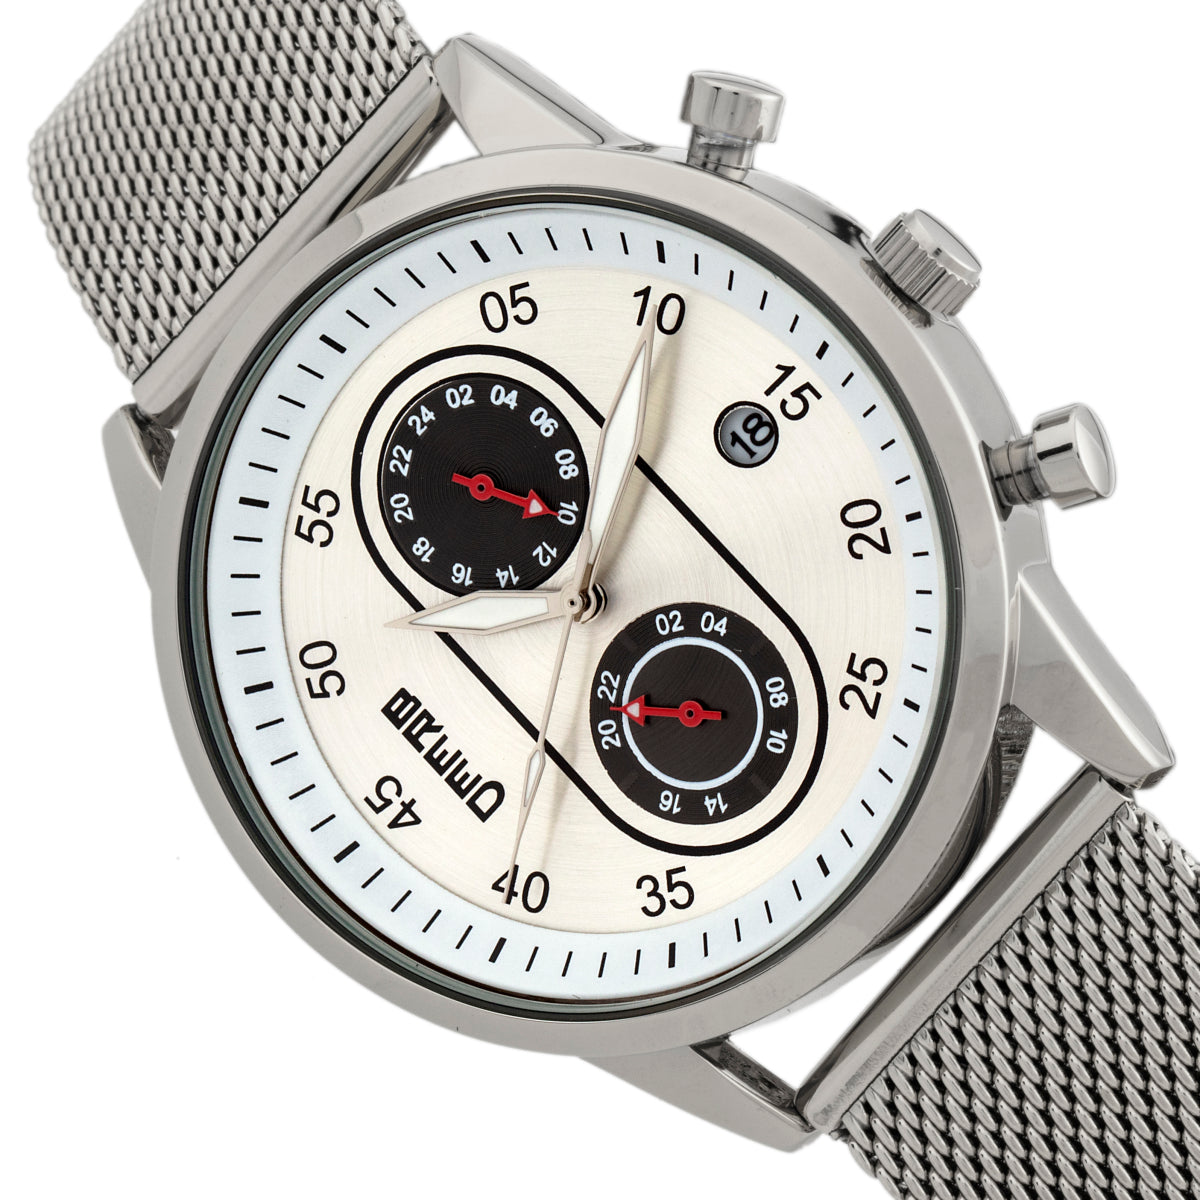 Breed Andreas Mesh-Bracelet Watch w/ Date - Silver - BRD8701